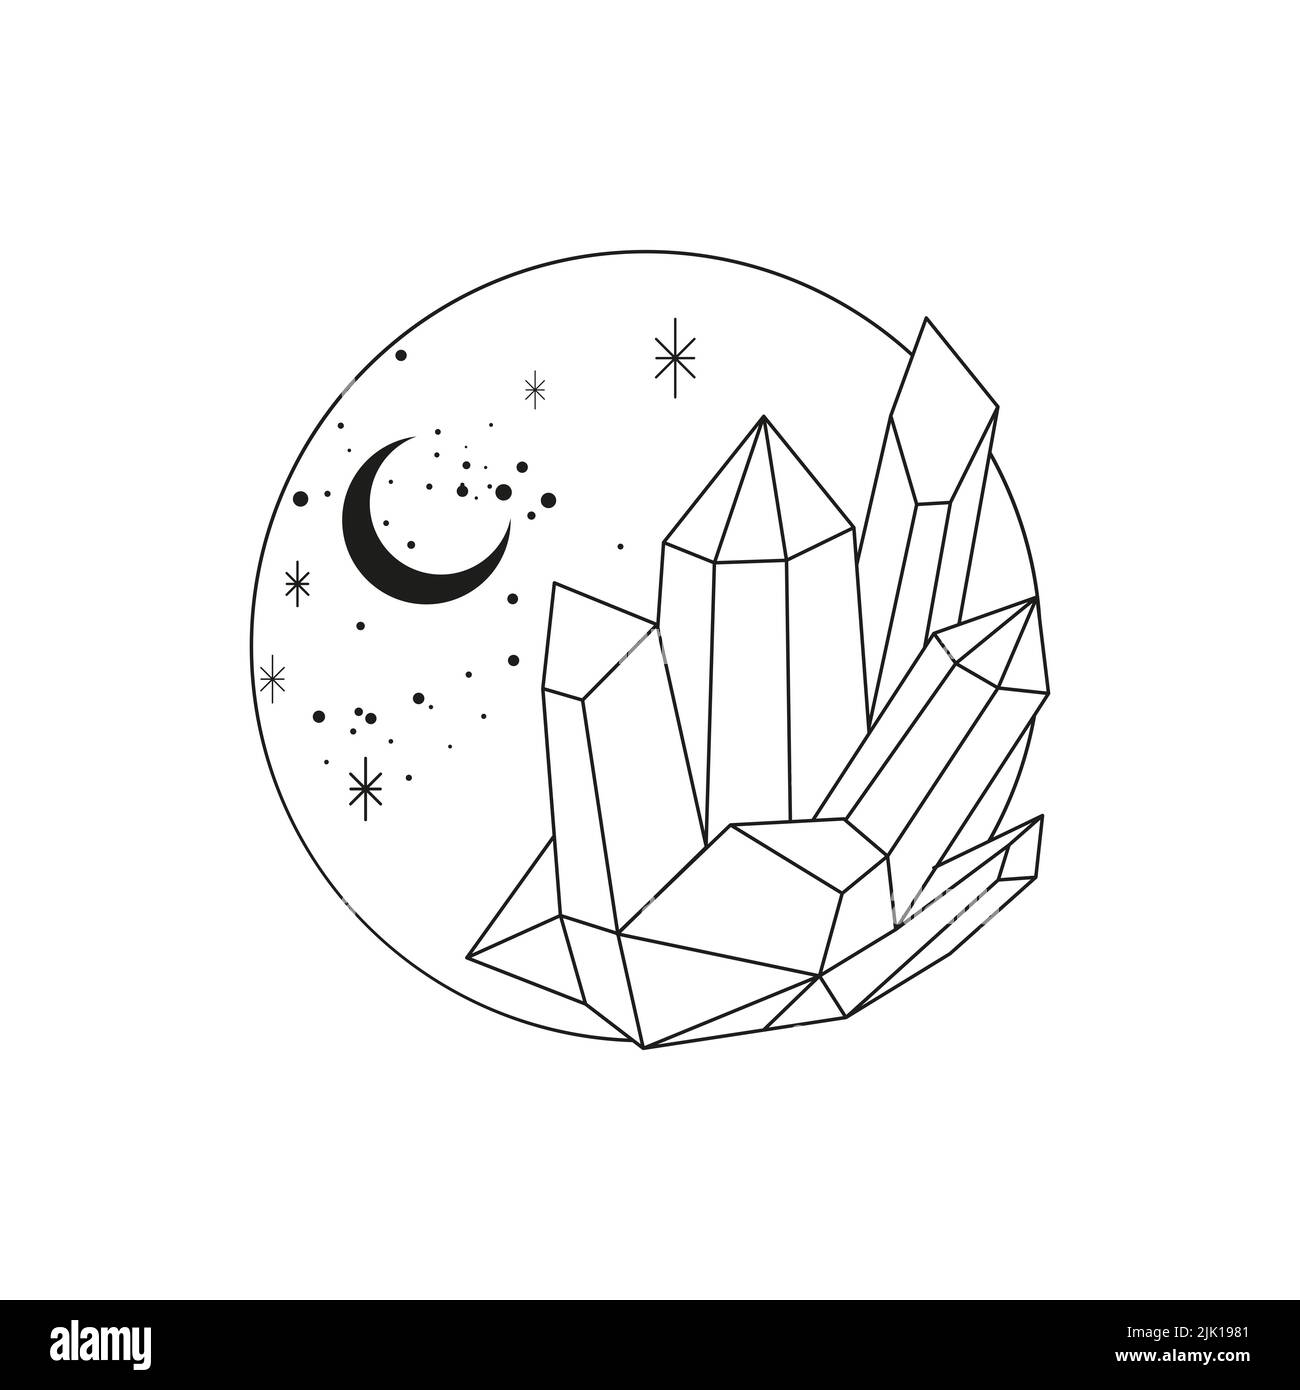 Illustration de cristaux et de lignes de lune Banque D'Images